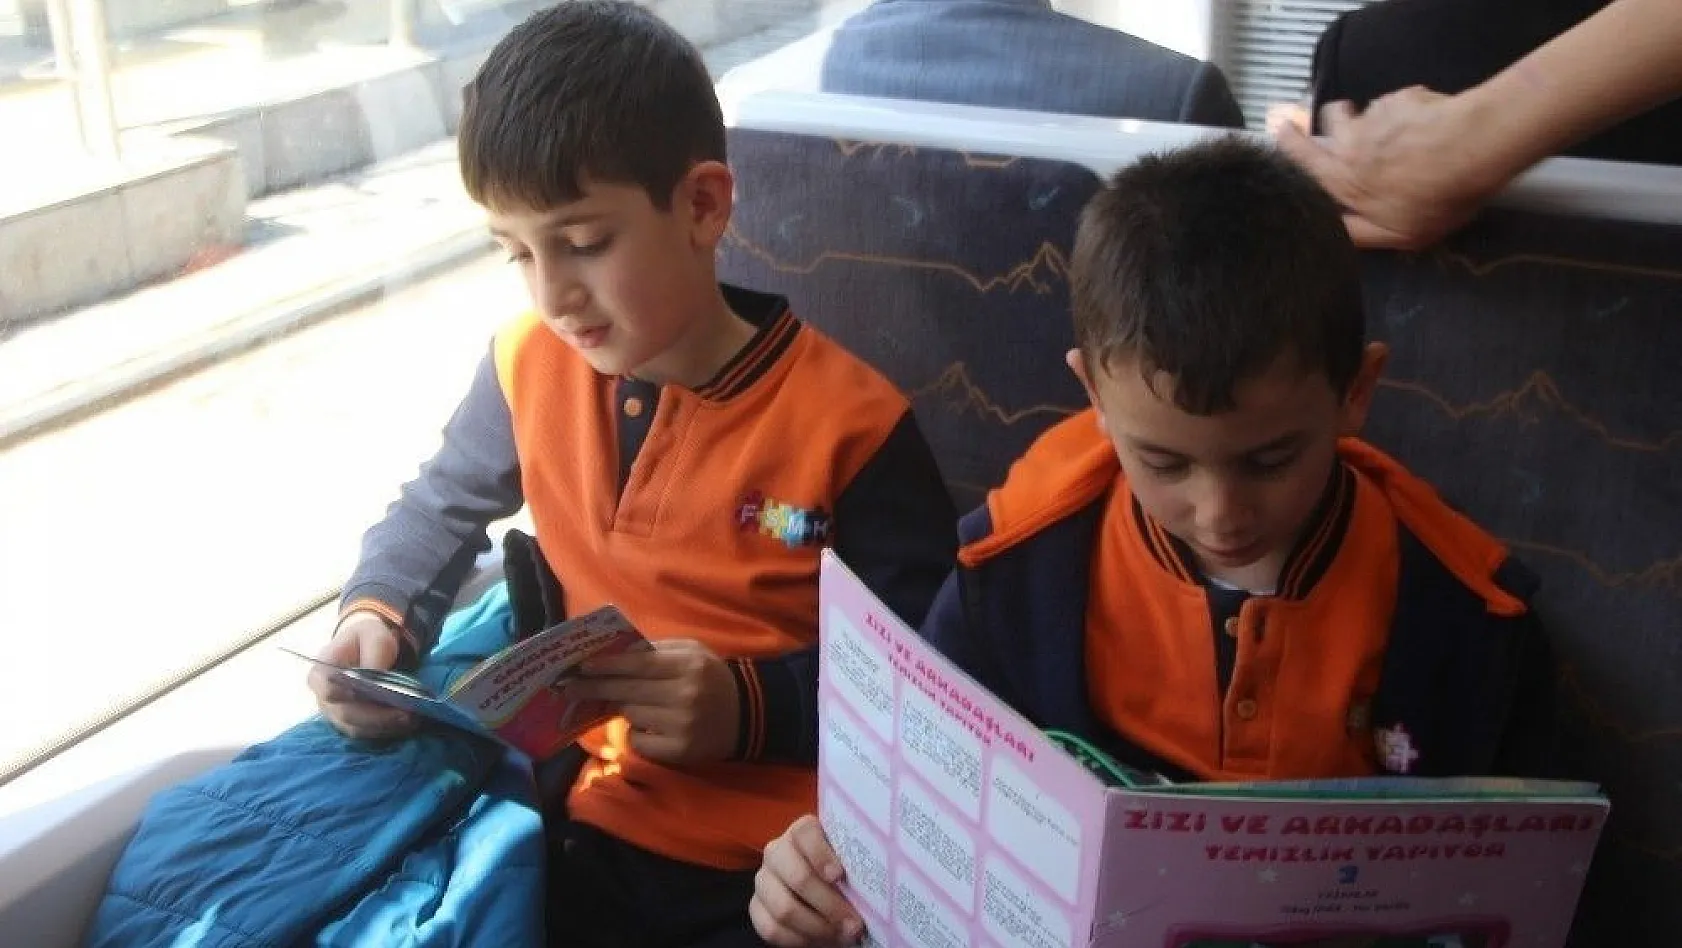 Kitap okumayı teşvik etmek için tramvayda kitap okudular